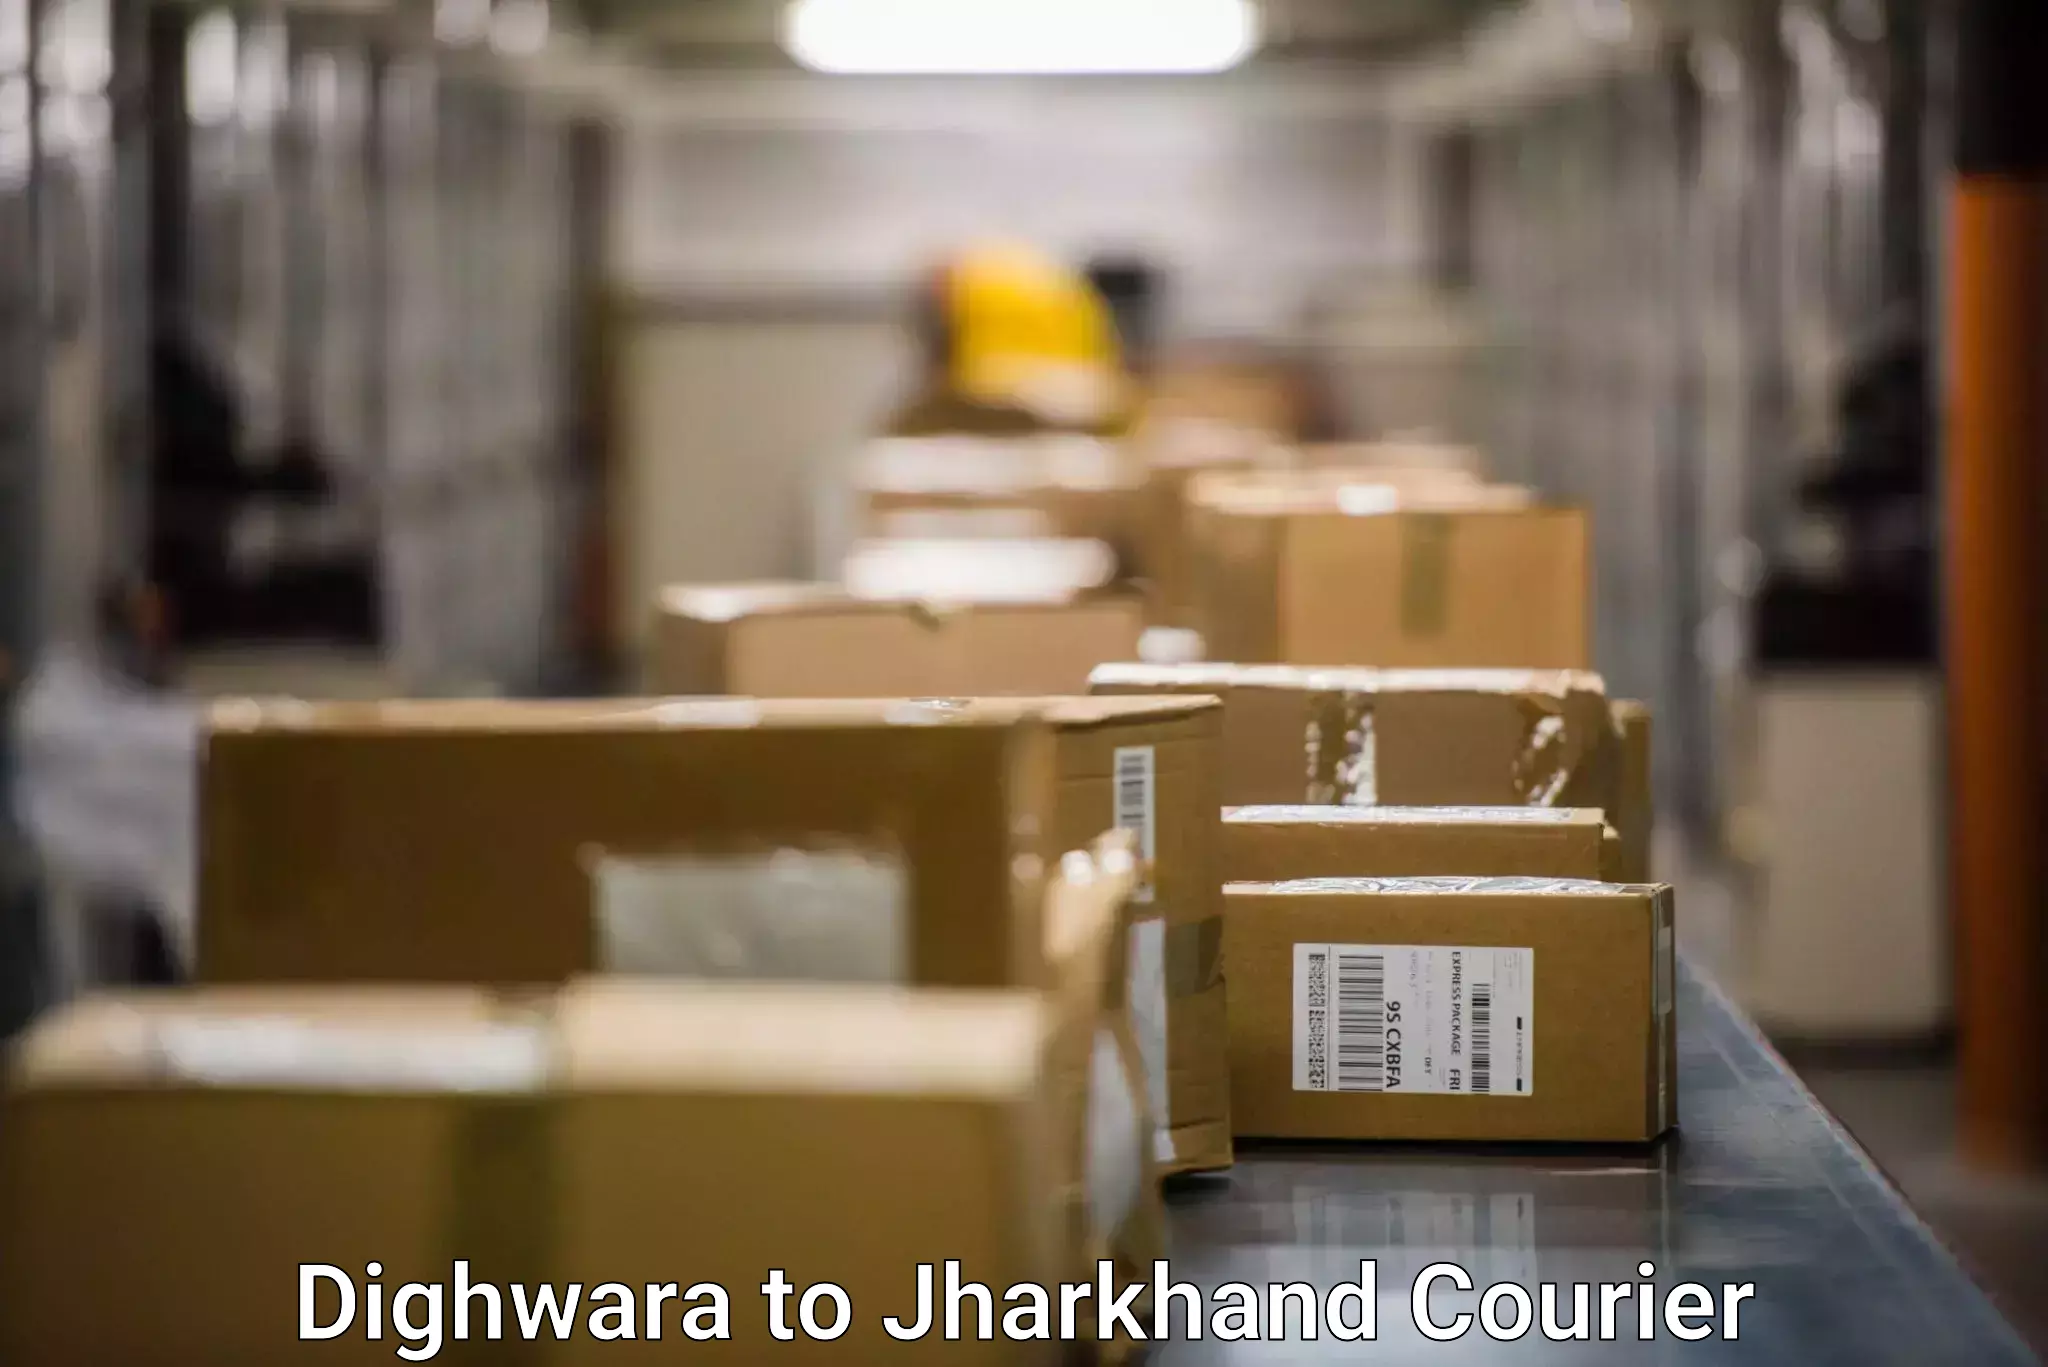 Secure shipping methods Dighwara to IIIT Ranchi